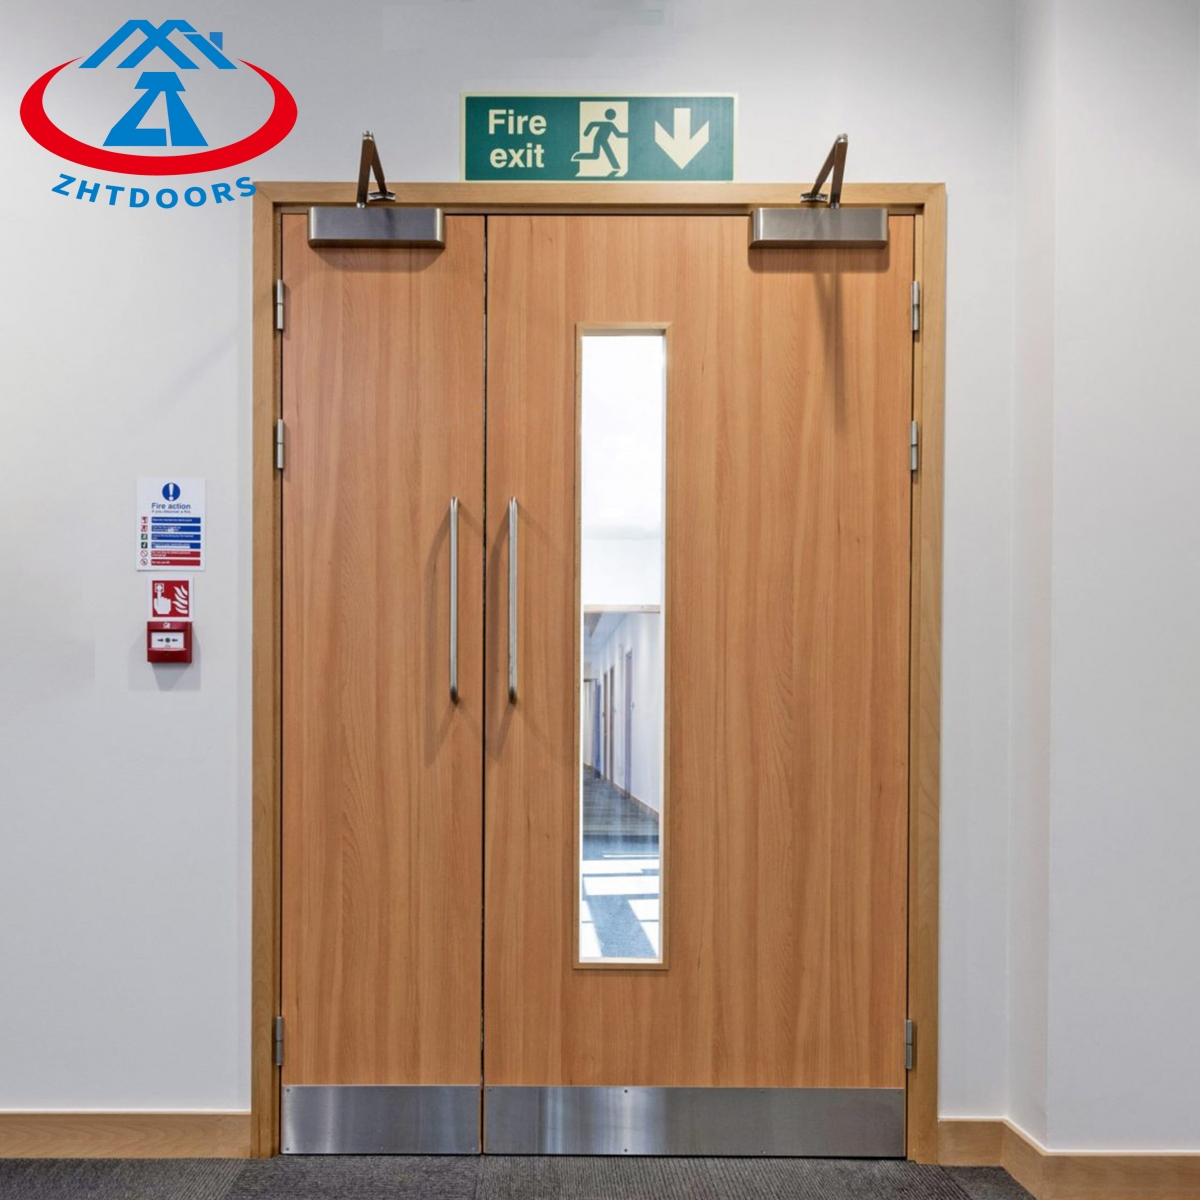 Wood Fire Proof Door-ZTFIRE Door- Fire Door,Fireproof Door,Fire rated Door,Fire Resistant Door,Steel Door,Metal Door,Exit Door